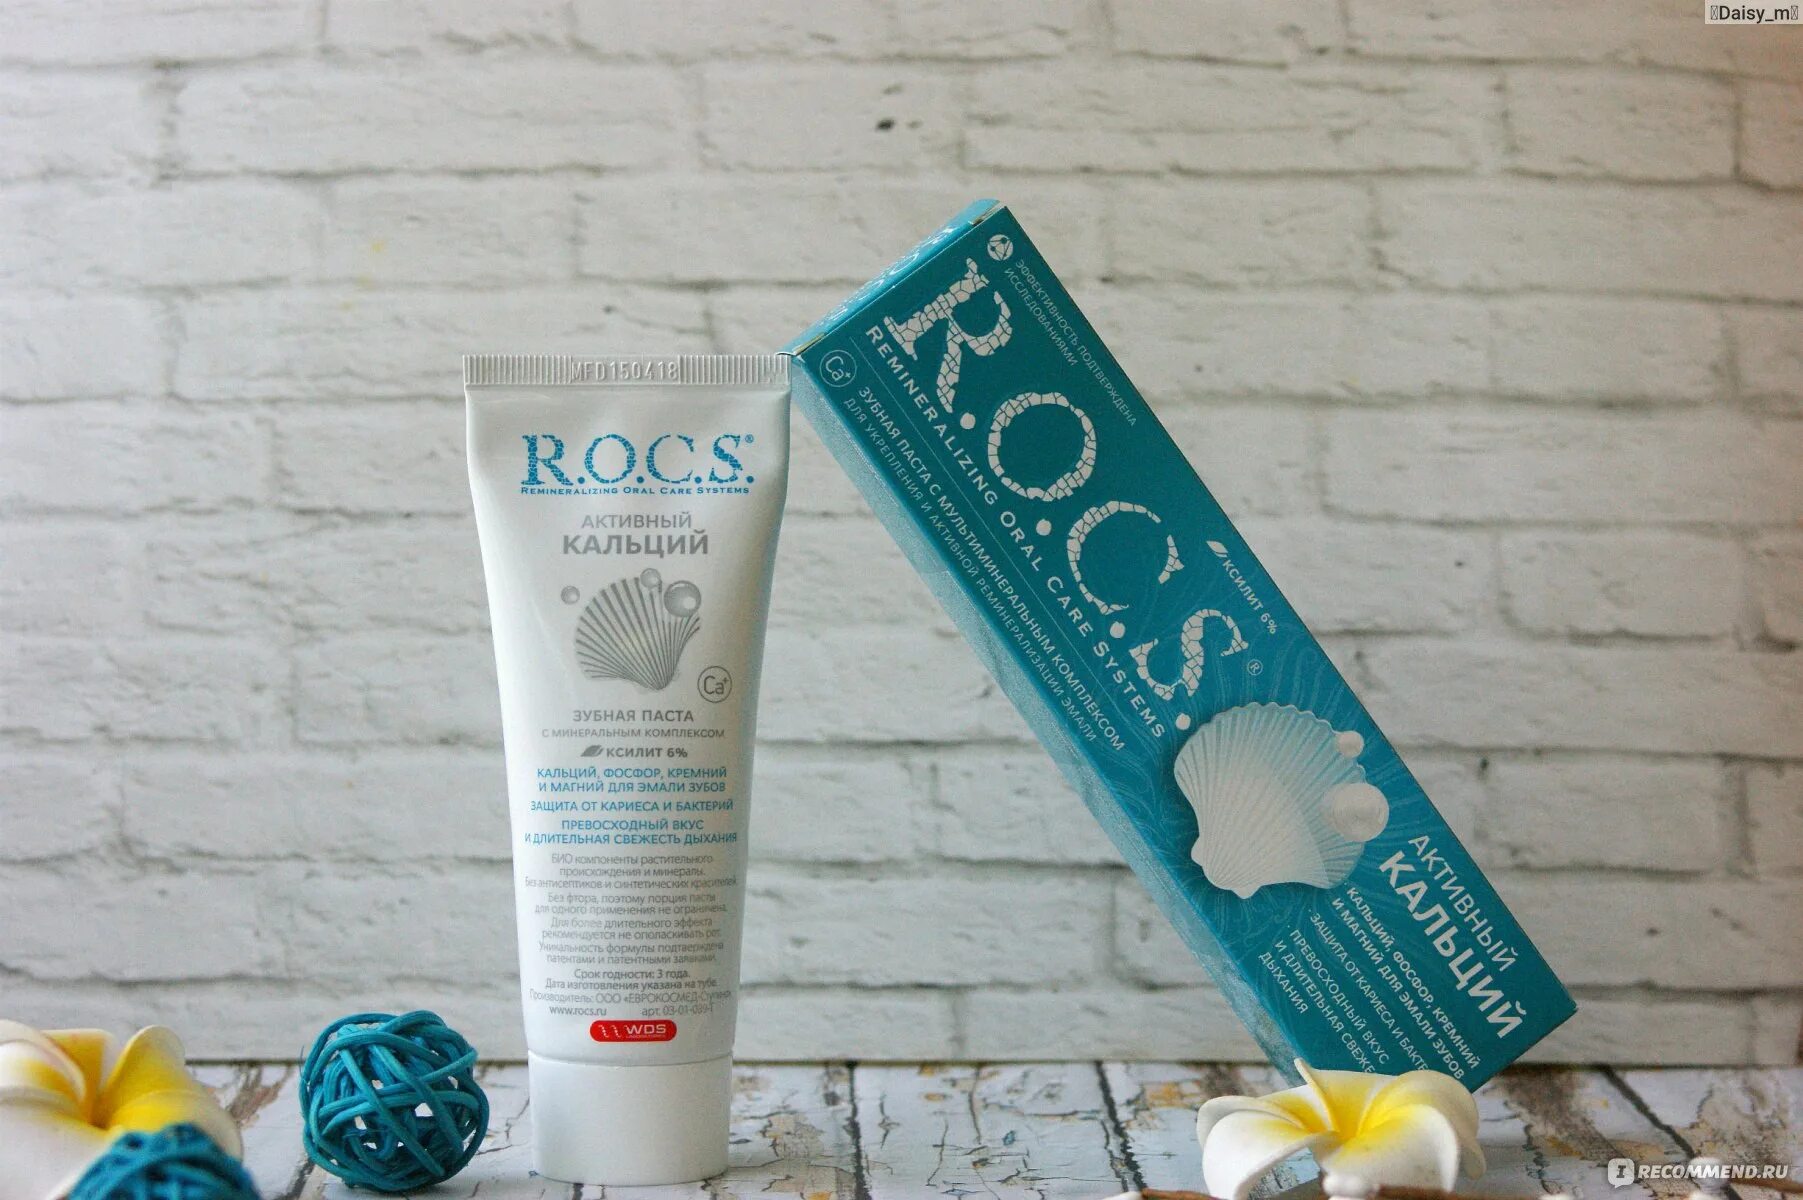 Паста рокс фтор. R.O.C.S. Рокс зубная паста 94г активный магний. Rocs Calcium зубная паста. Паста Rocs активный кальций. Зубная паста Рокс активный кальций 94гр (54/9).